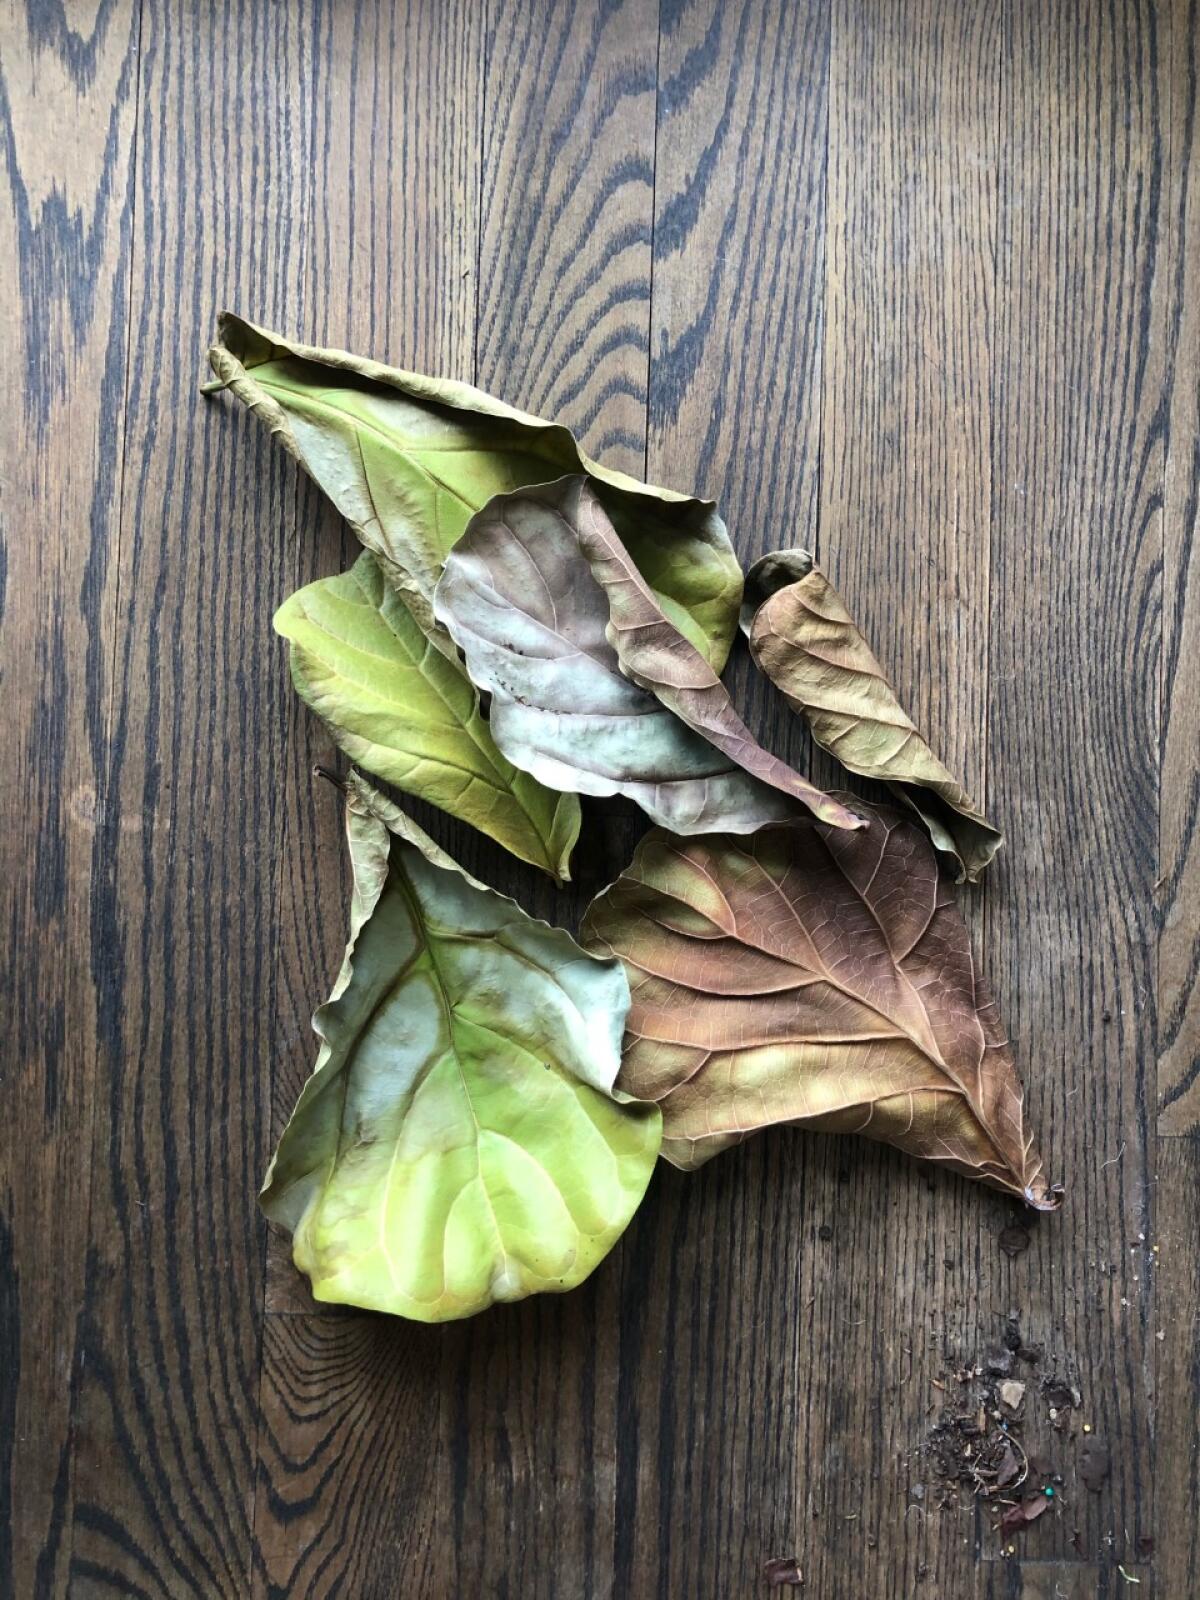 Fiddle-leaf fig leaves, shriveled and brown.